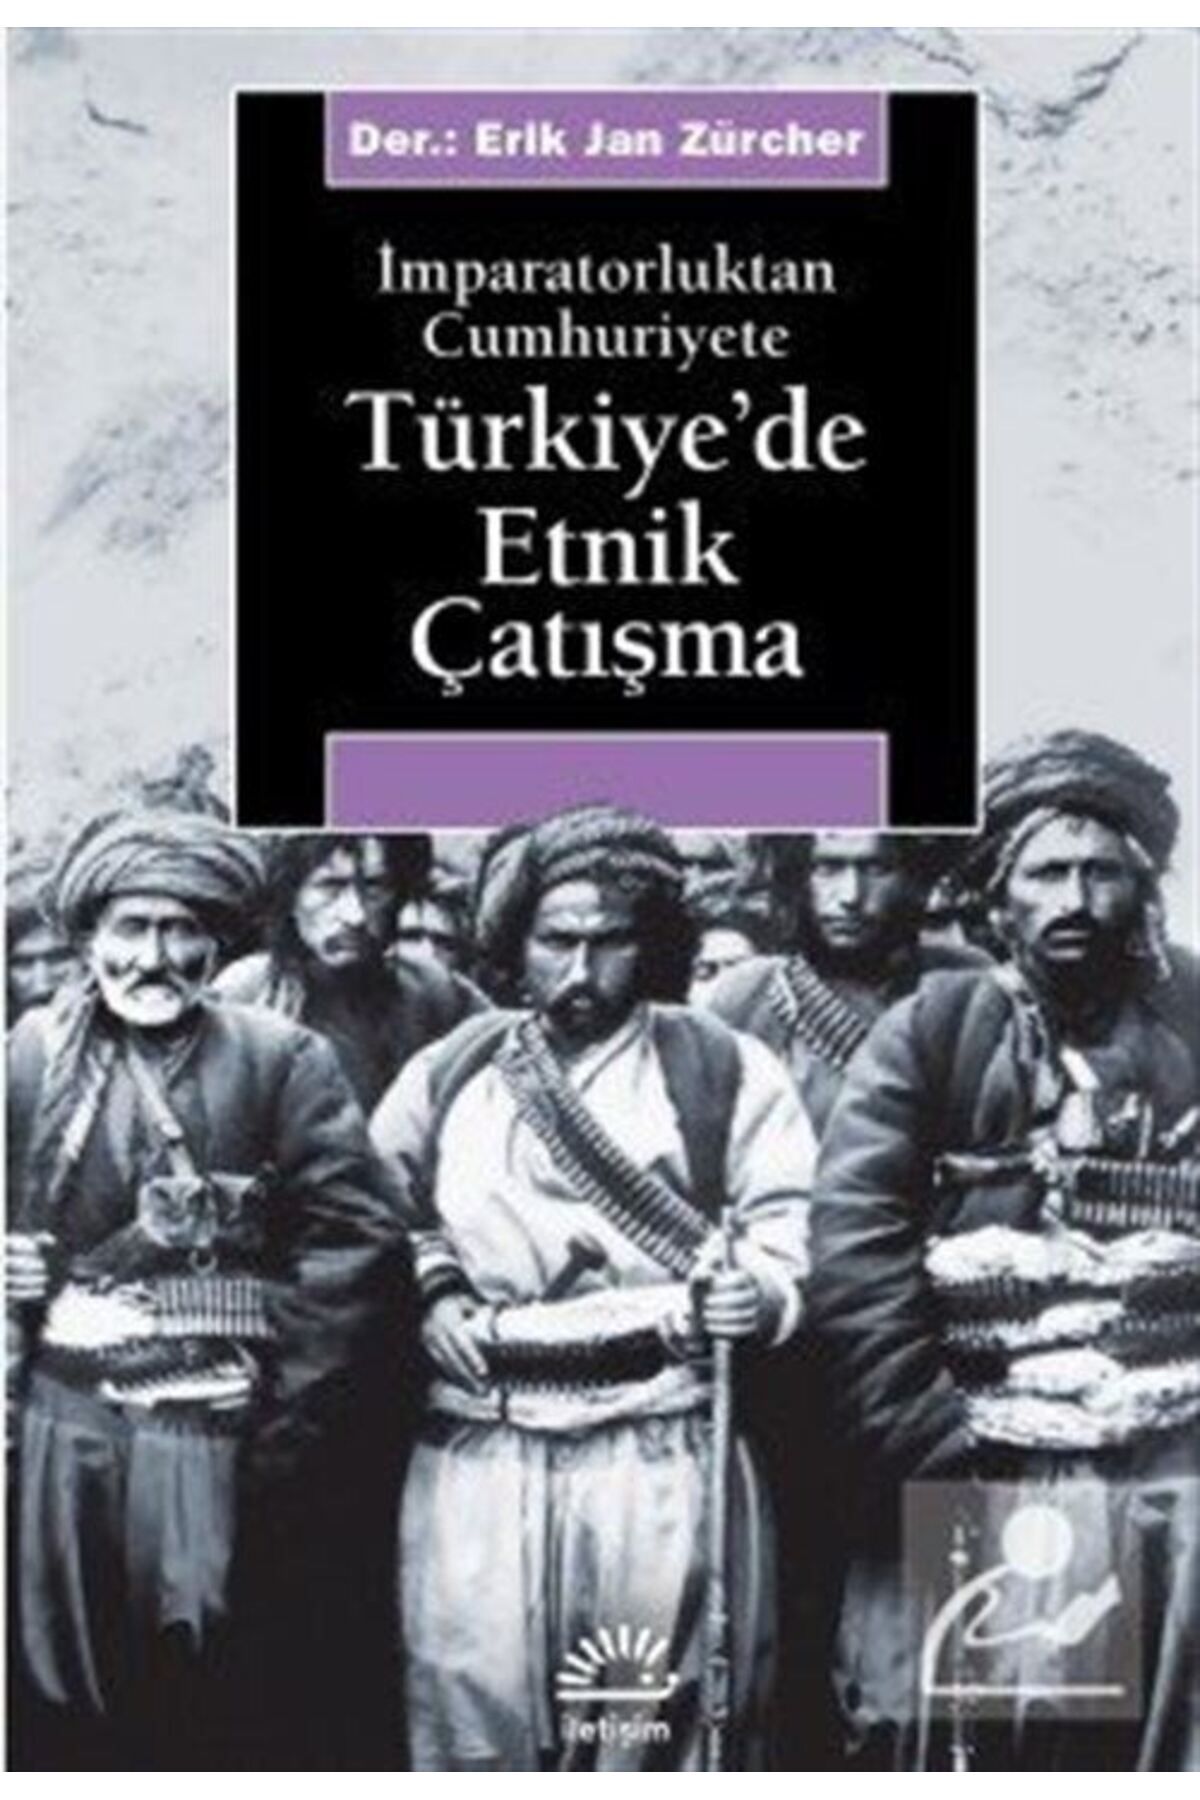 İletişim Yayınları Türkiye'de Etnik Çatışma & Imparatorluktan Cumhuriyete